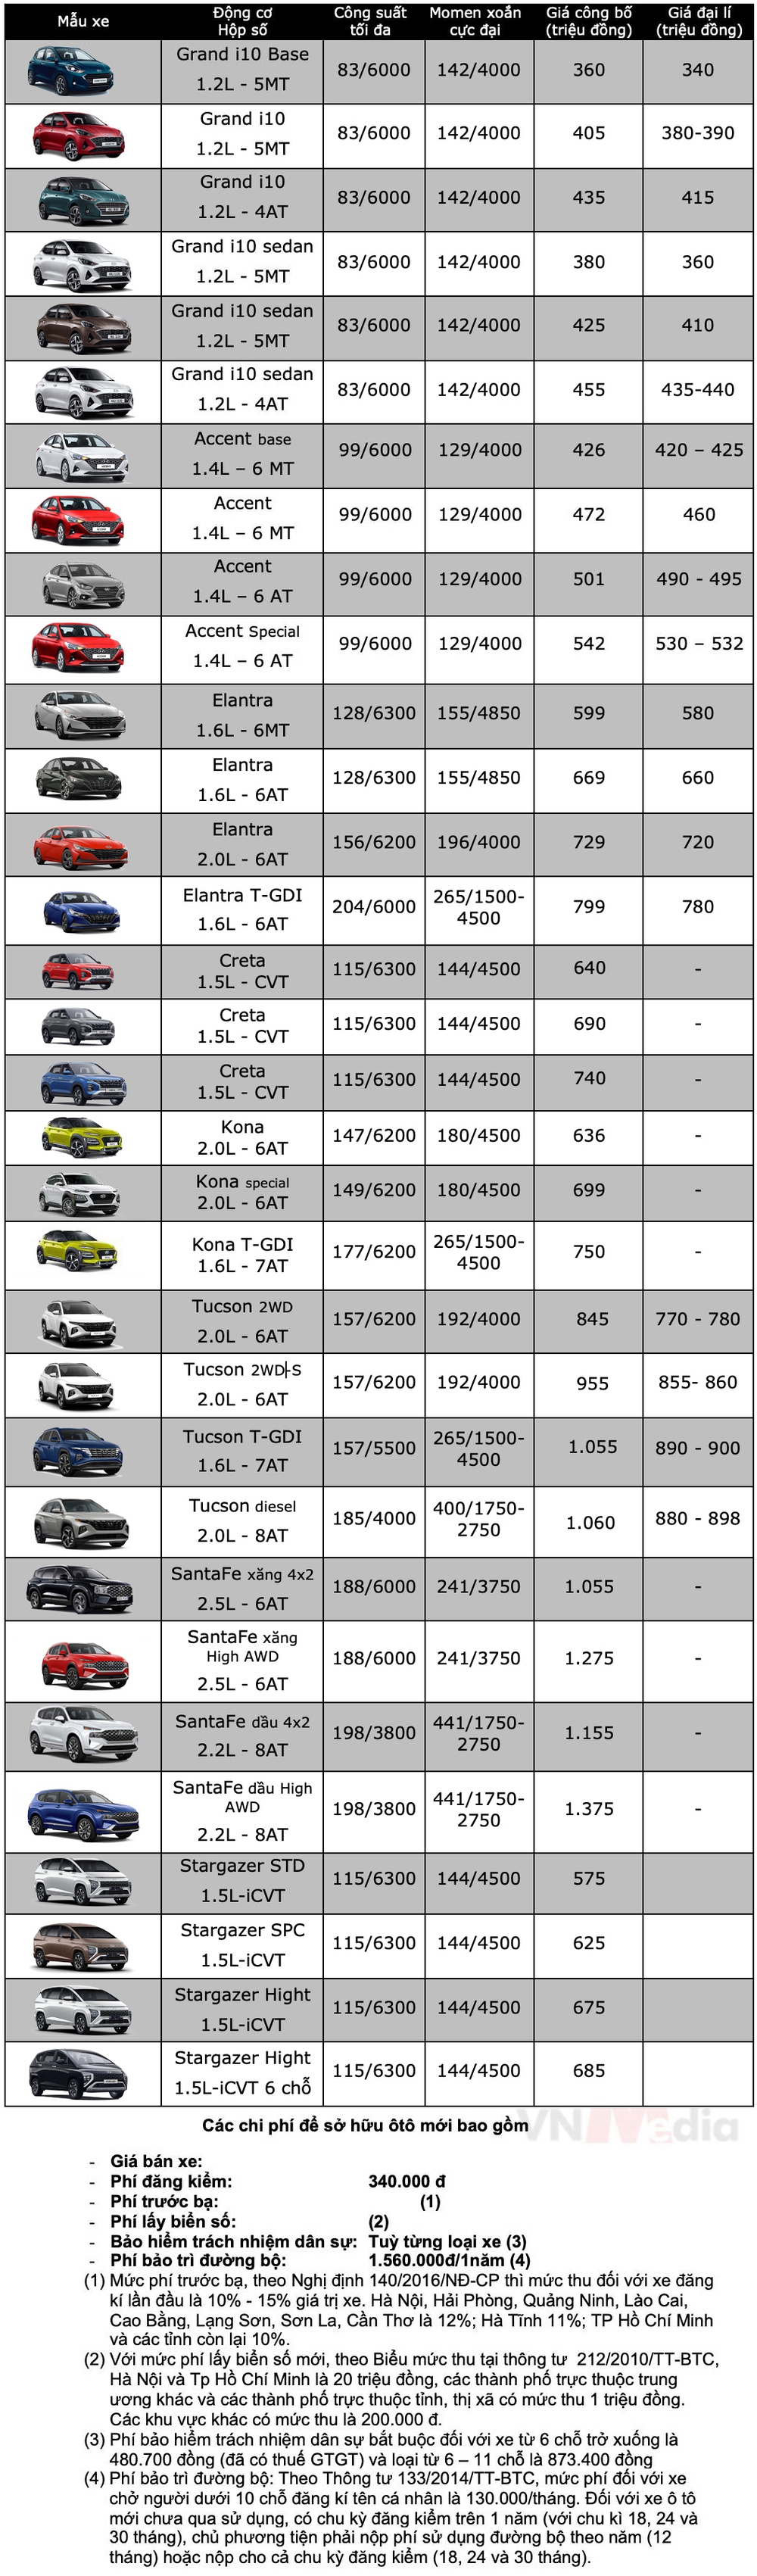 Bảng giá xe Hyundai tháng 3: Hyundai Santa Fe được giảm 160 triệu đồng - Ảnh 2.